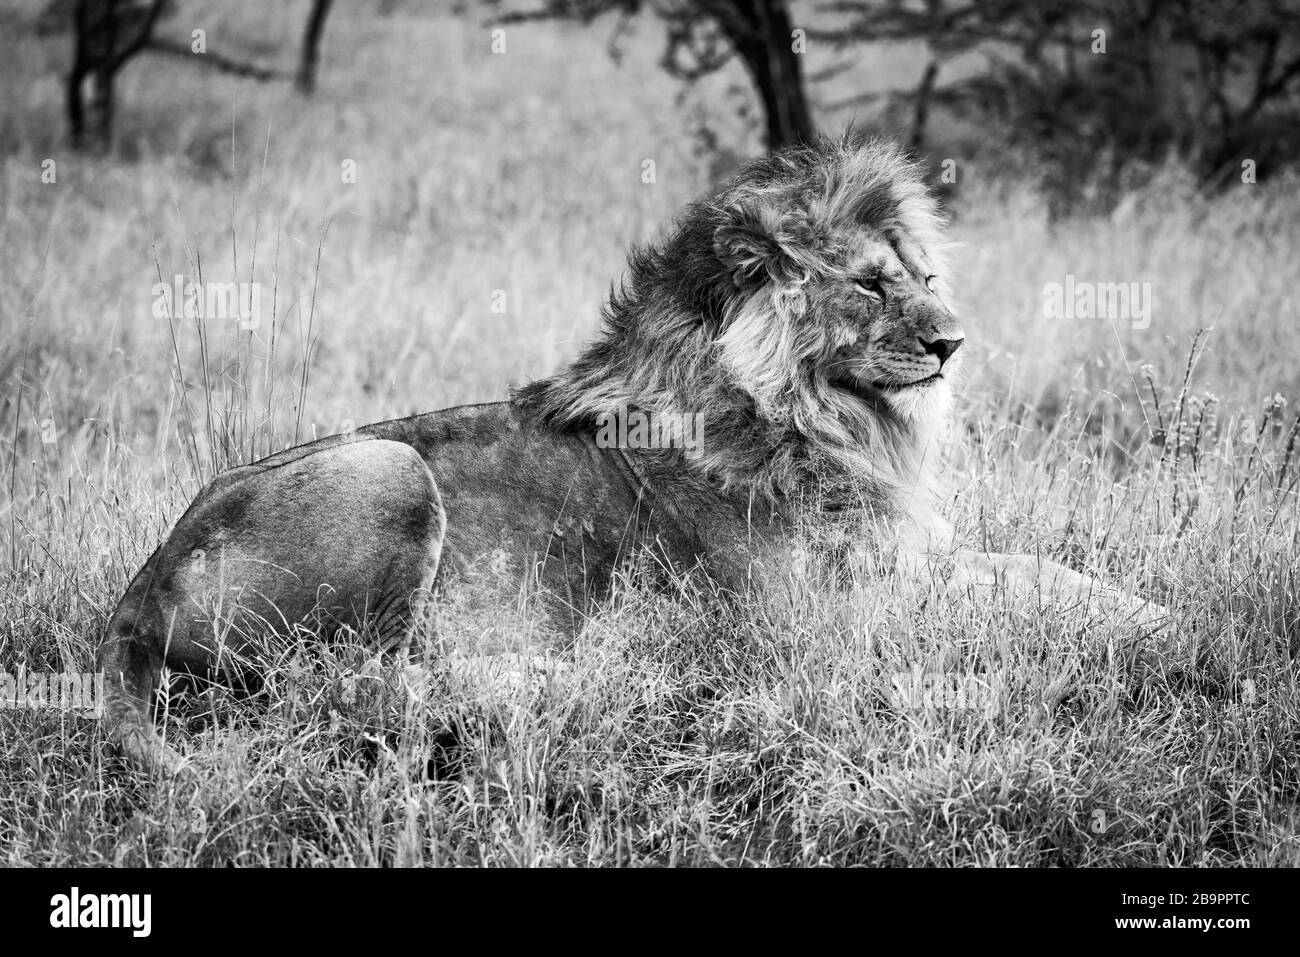 Le lion mâle noir et blanc se trouve dans l'herbe longue Banque D'Images